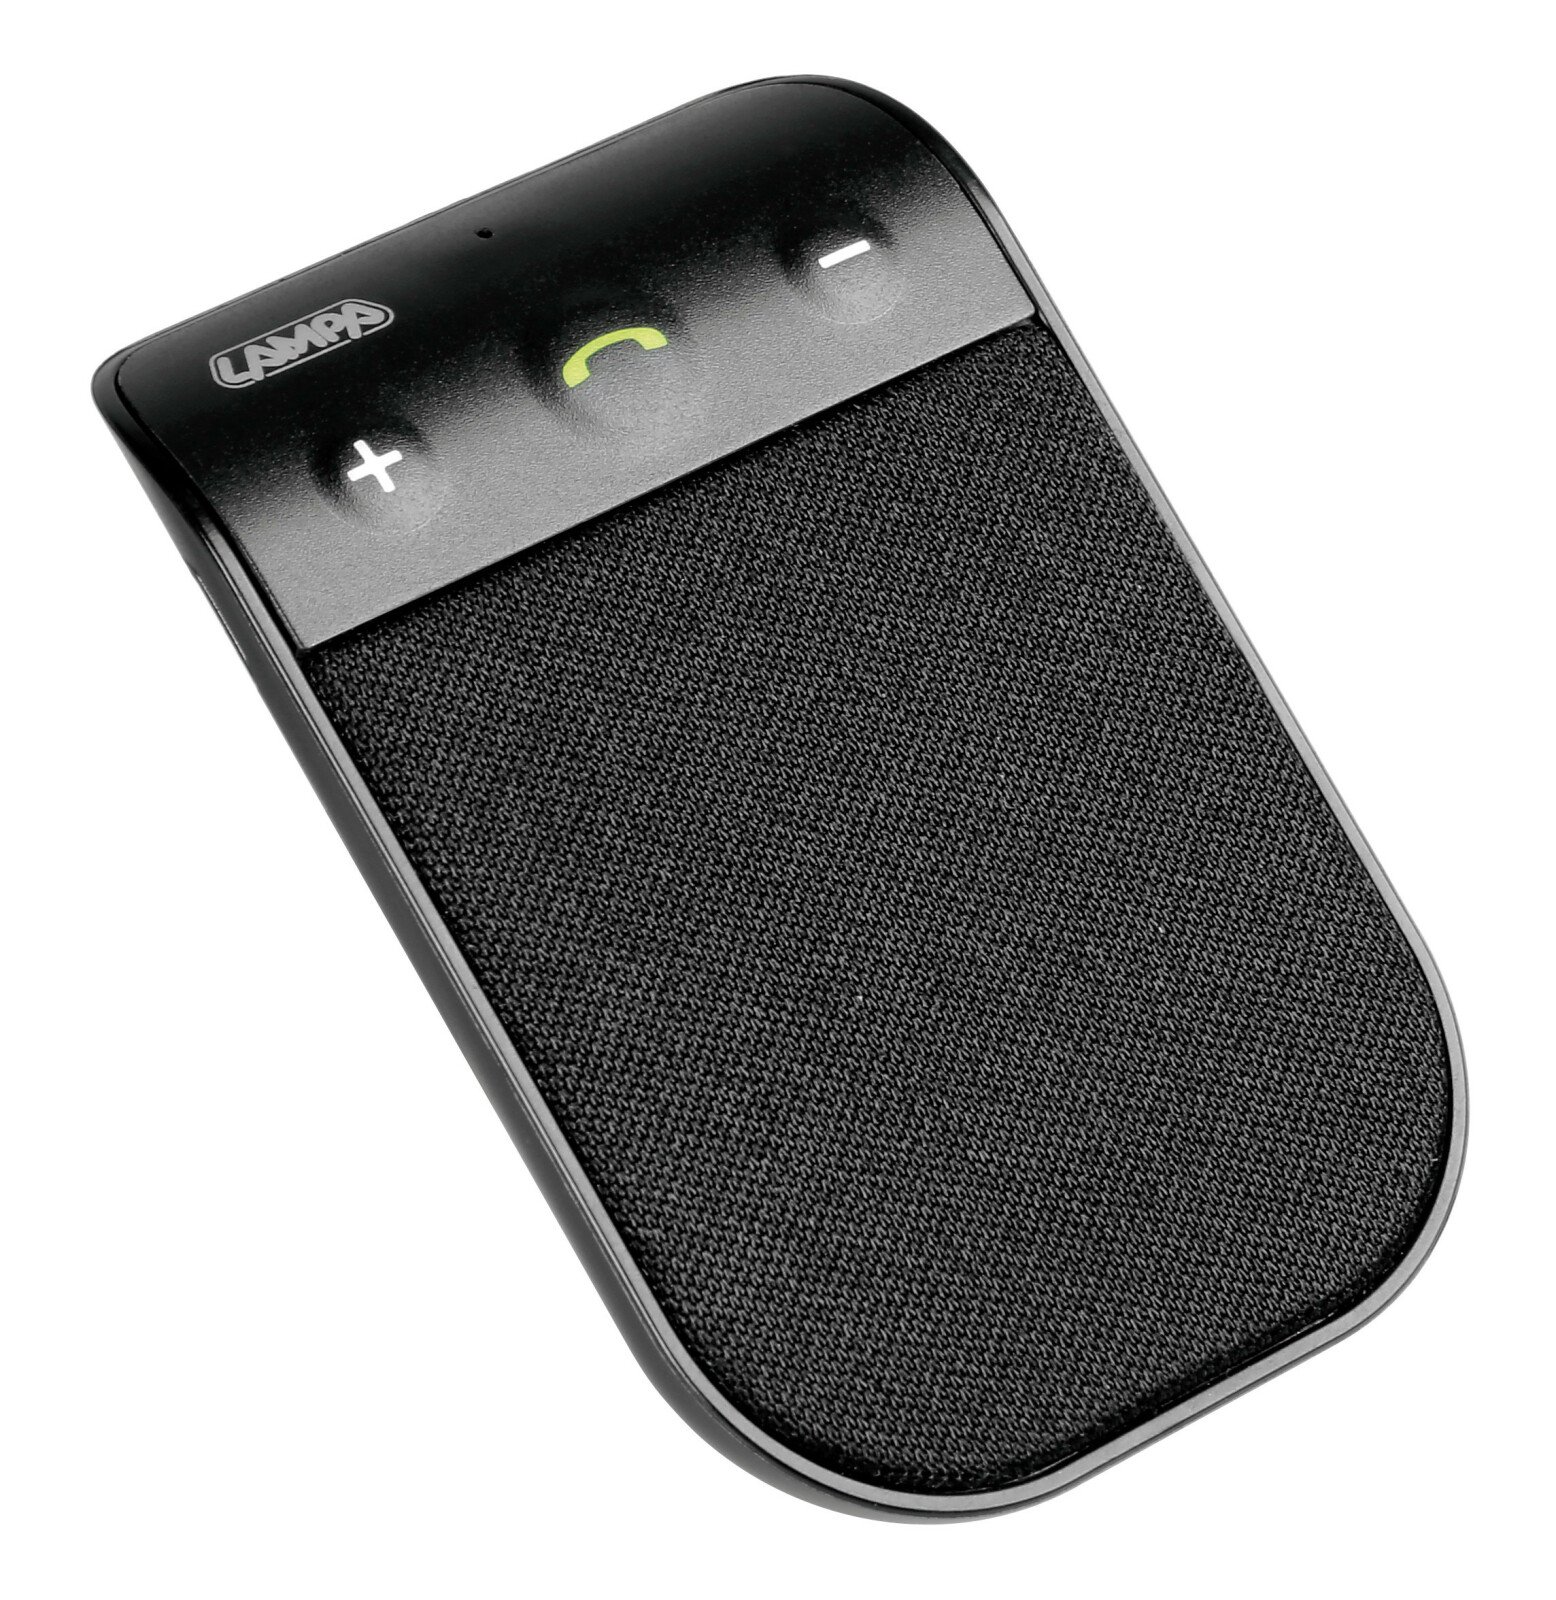 Car kit Bluetooth 4.0 hordozható, hangszóróval és akkumulátorral 10h thumb